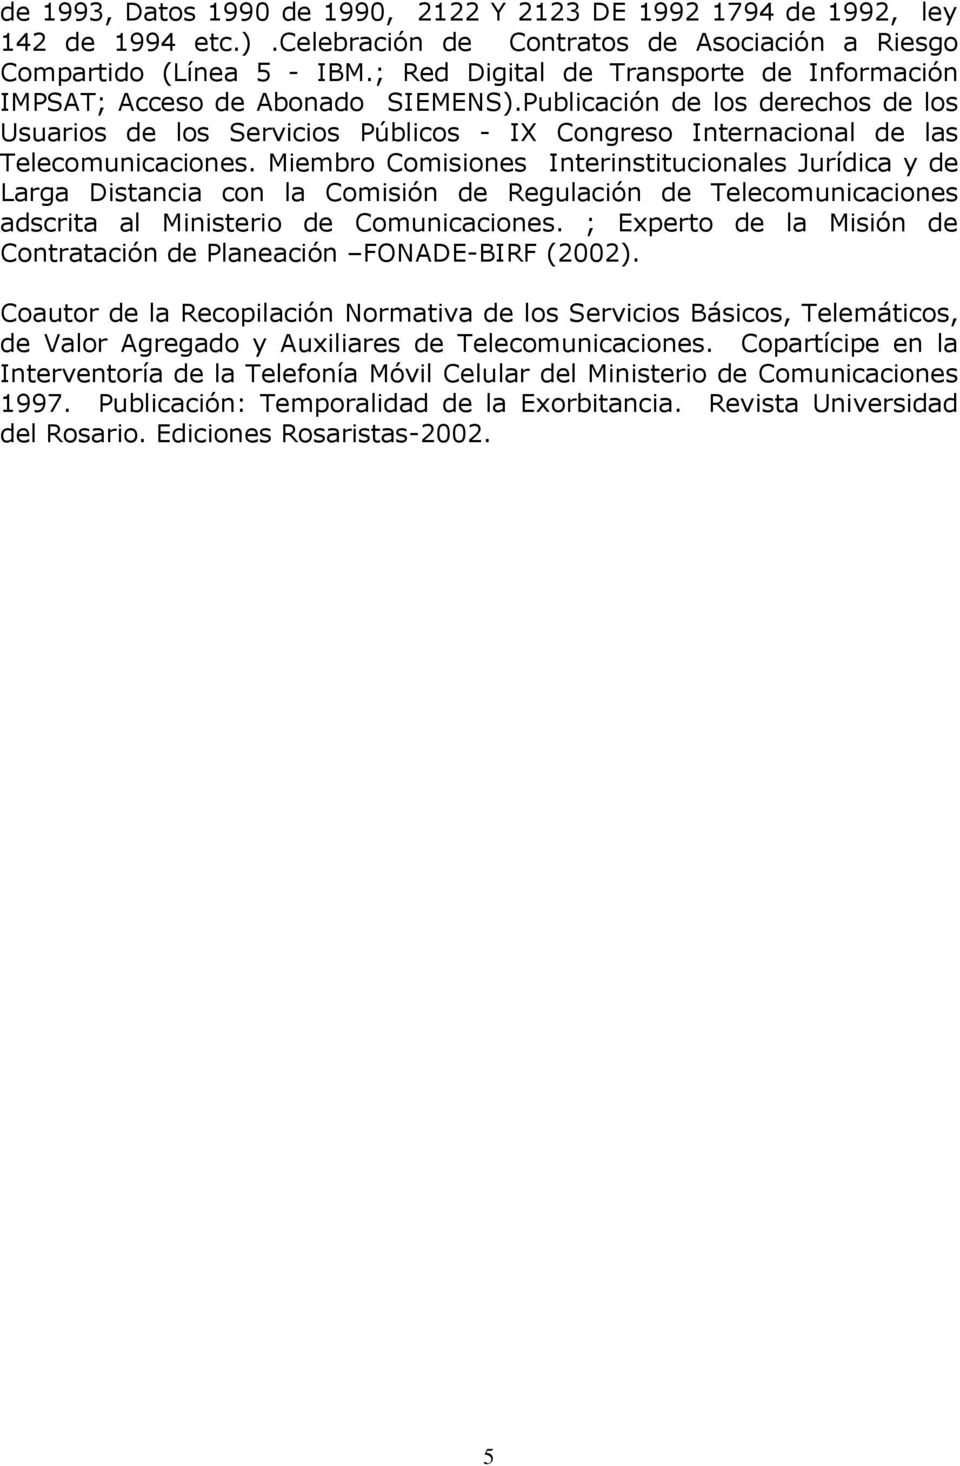 Publicación de los derechos de los Usuarios de los Servicios Públicos - IX Congreso Internacional de las Telecomunicaciones.